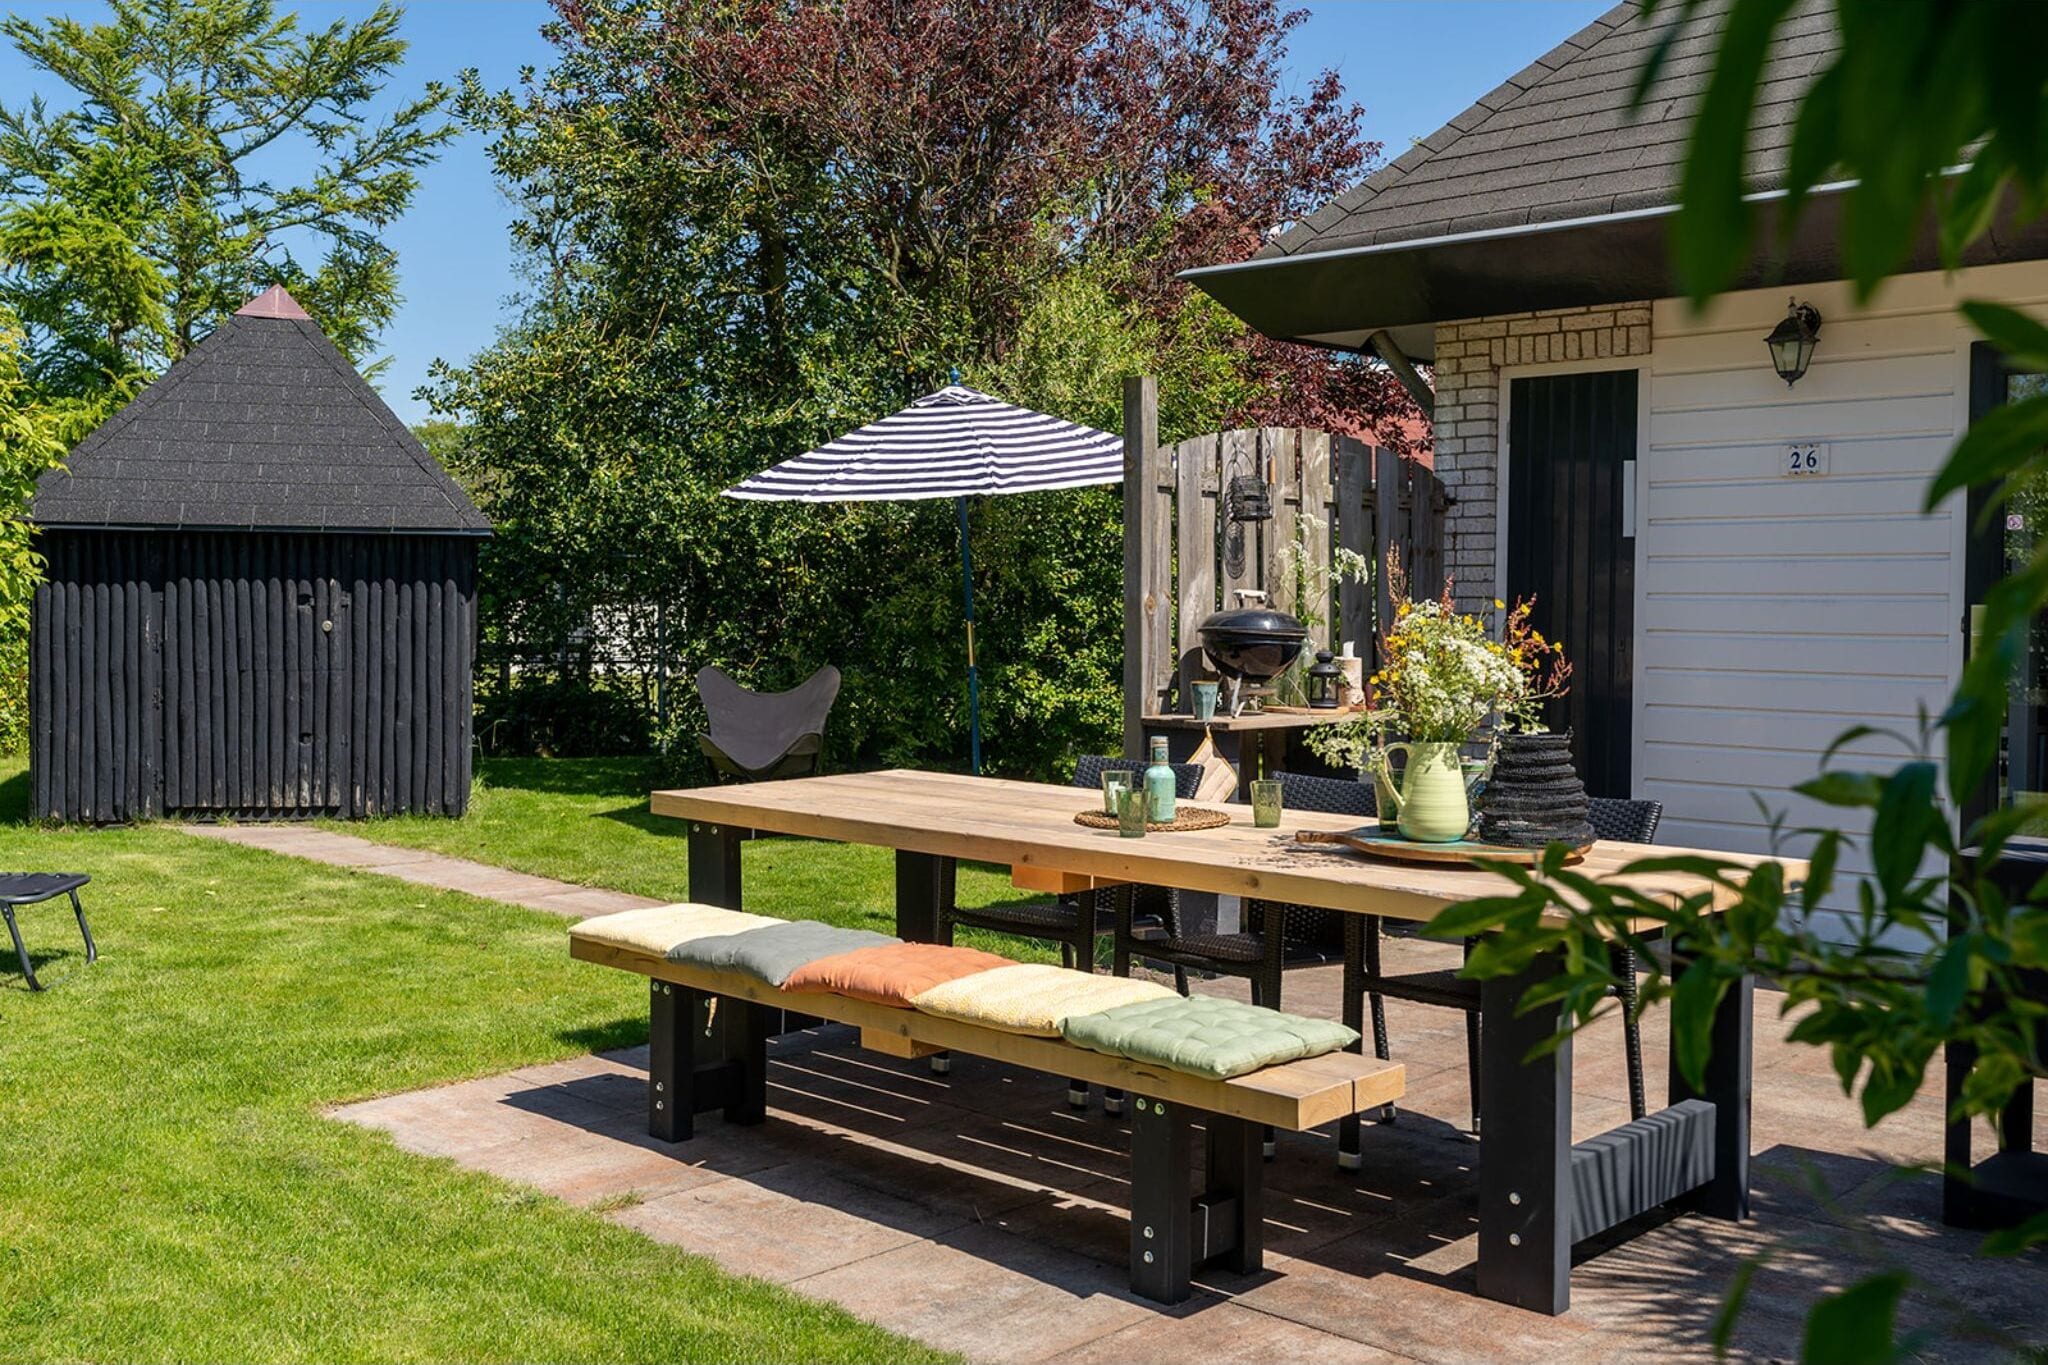 Maison de vacances idyllique avec jardin clôturé